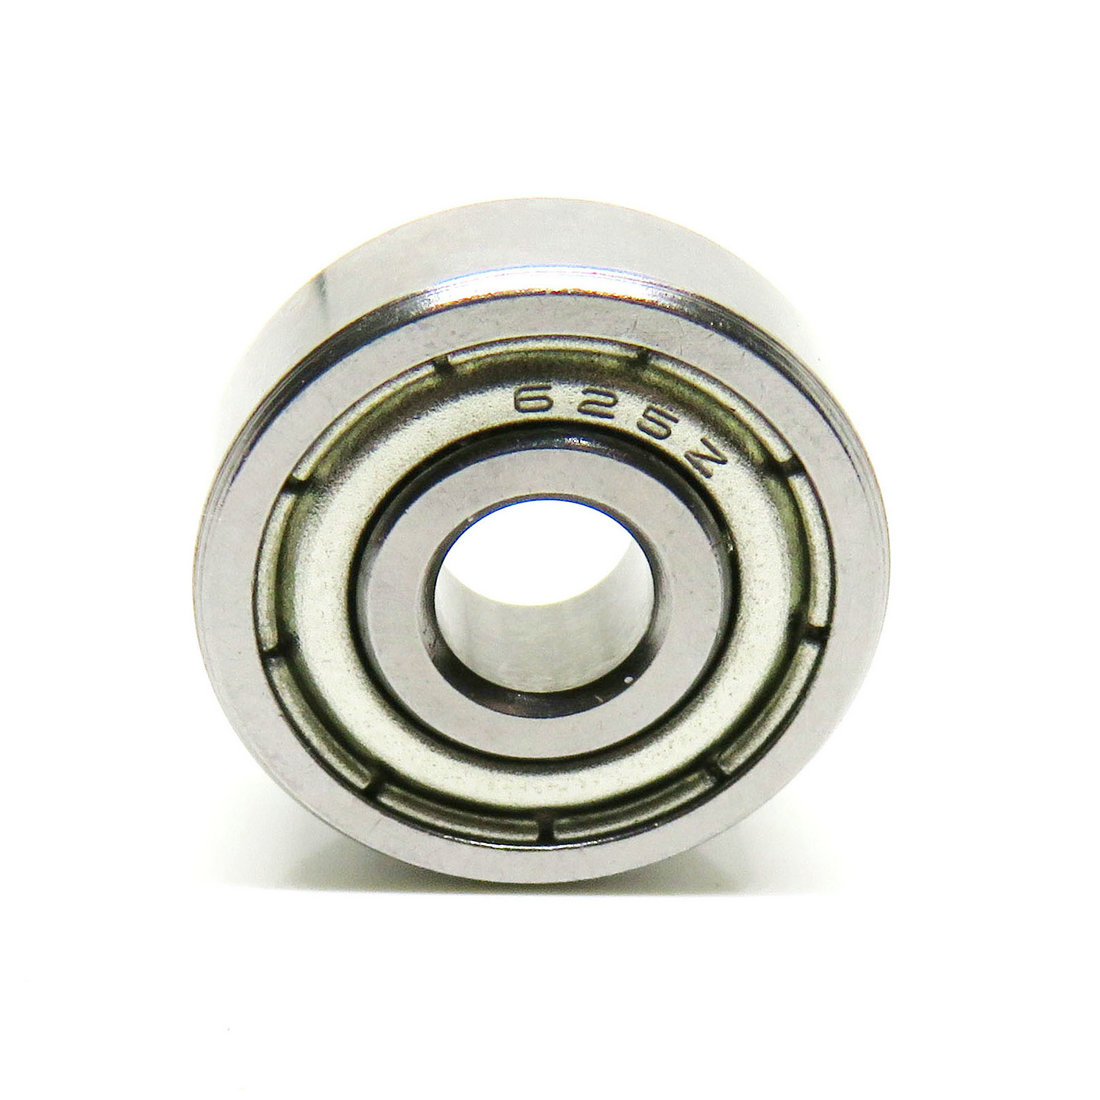 625-ZZ cuscinetto Deep groove sliding ball bearing 625-2Z 5x16x5mm rodamiento 625 2Z 625 ZZ 625ZZ.jpg